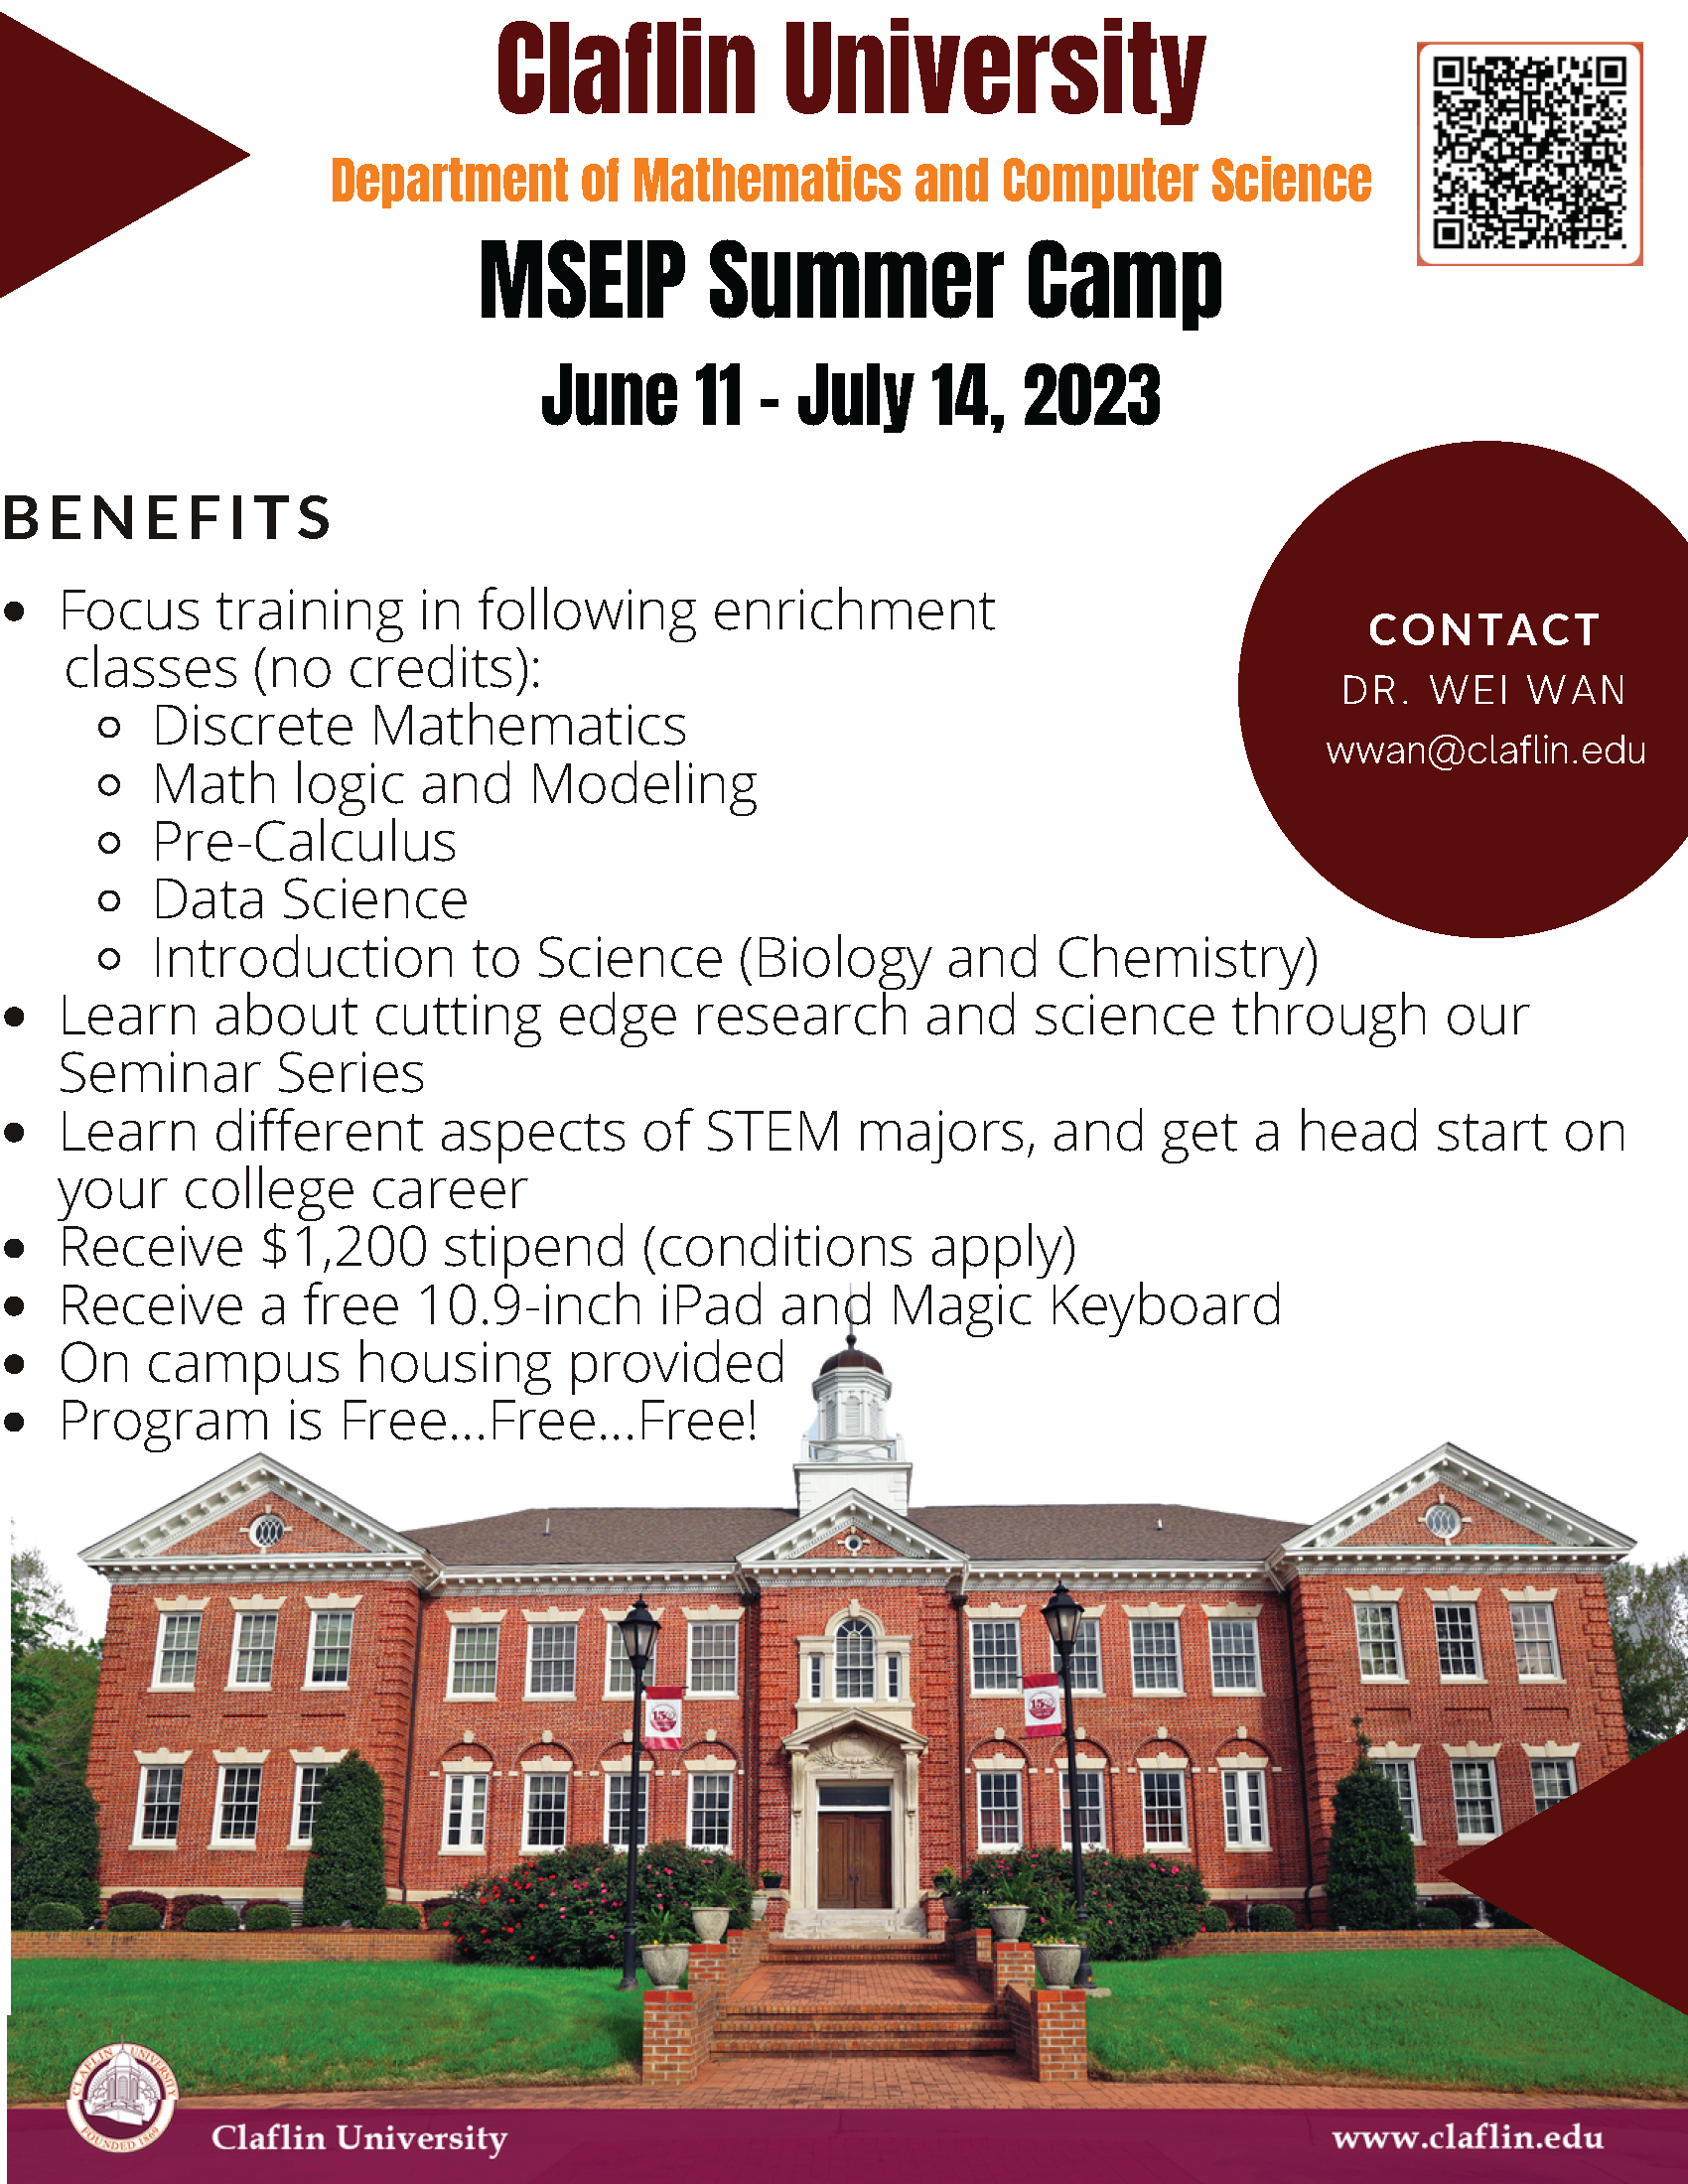 Claflin University Summer Program Flyer - MSEIP